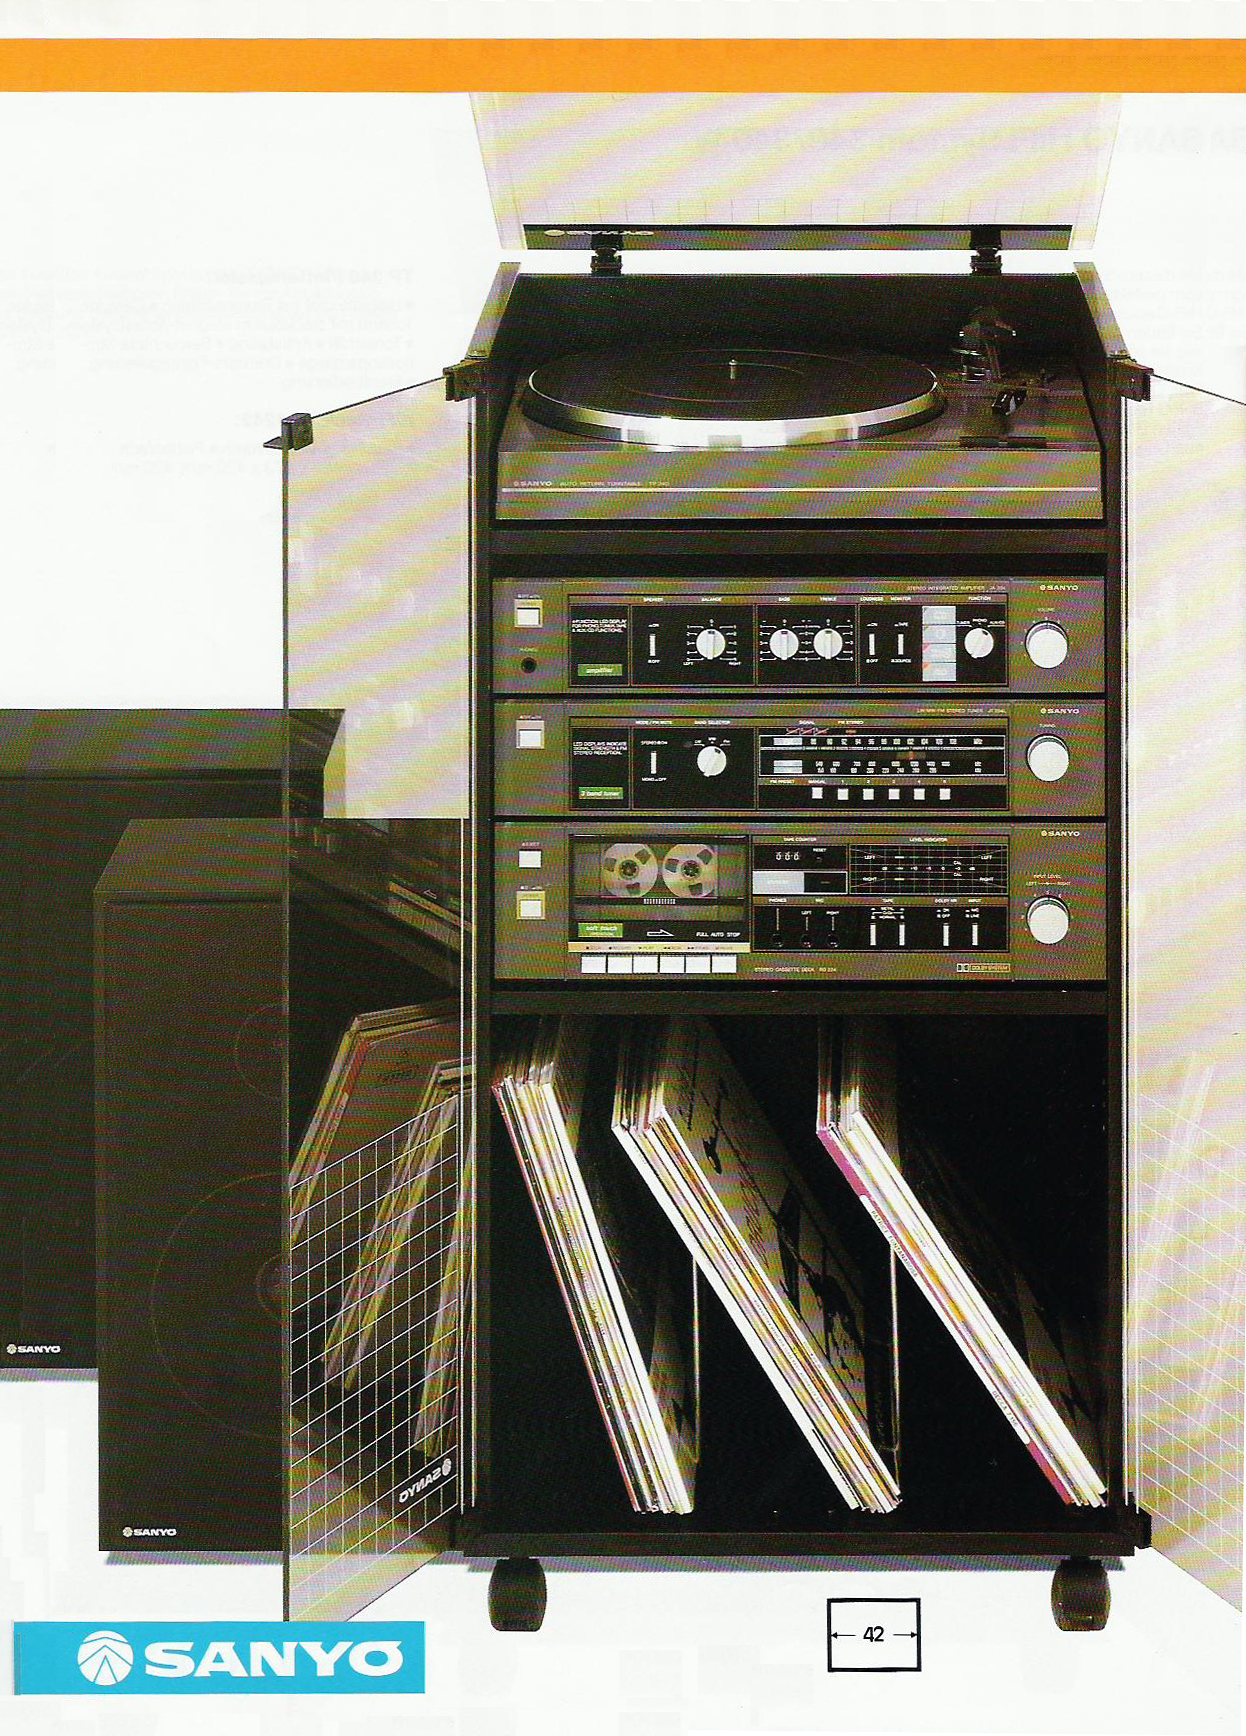 Sanyo System 234-Prospekt-1984.jpg